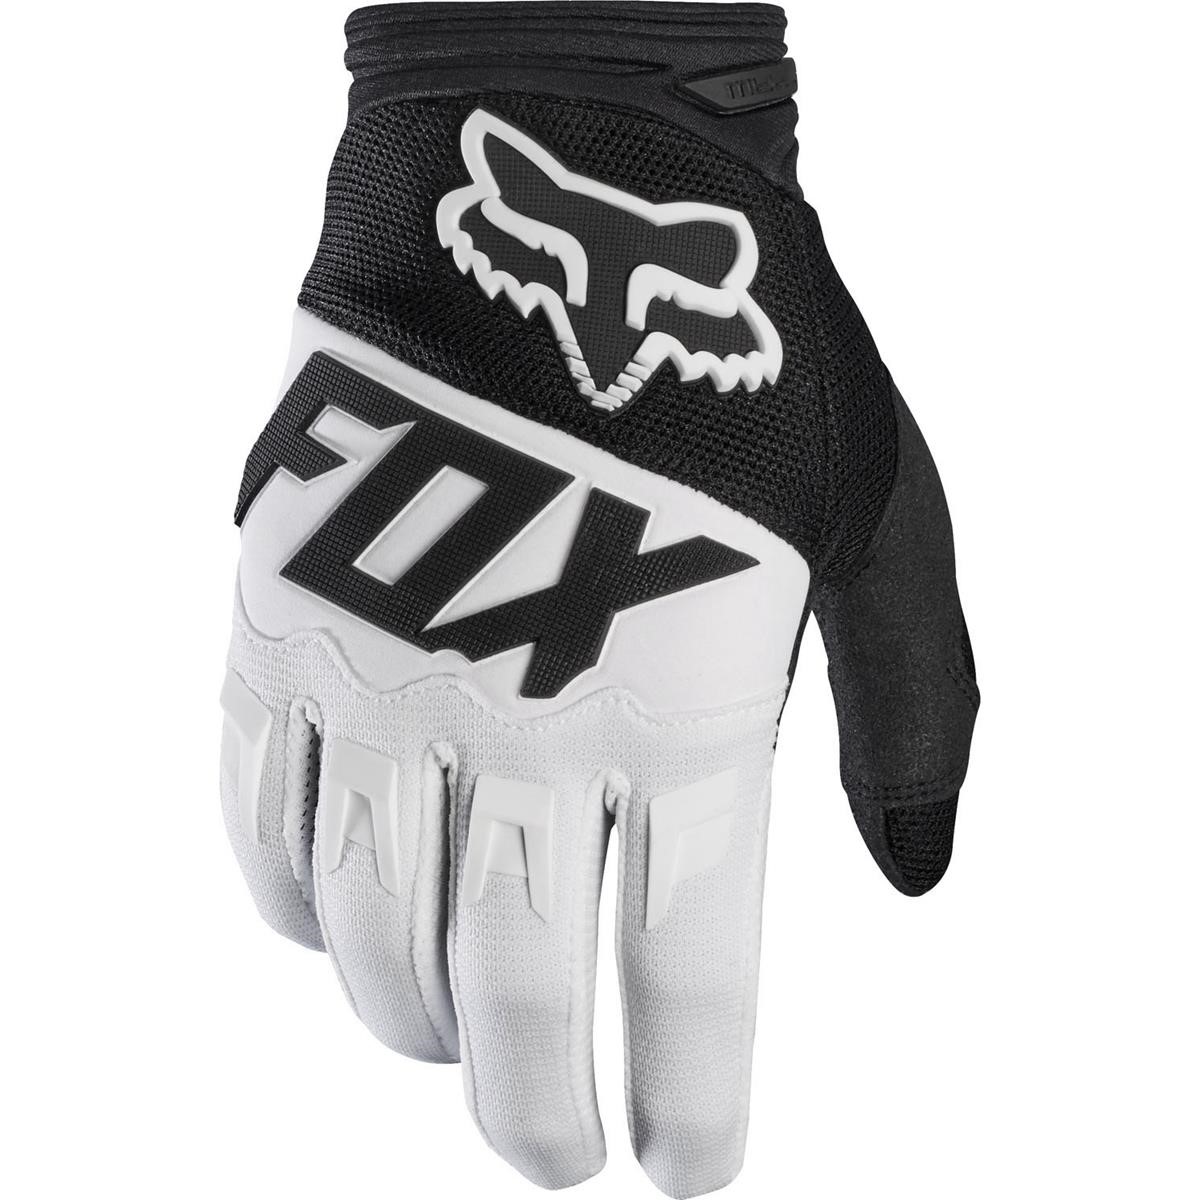 Fox Gloves Dirtpaw Race Black/White